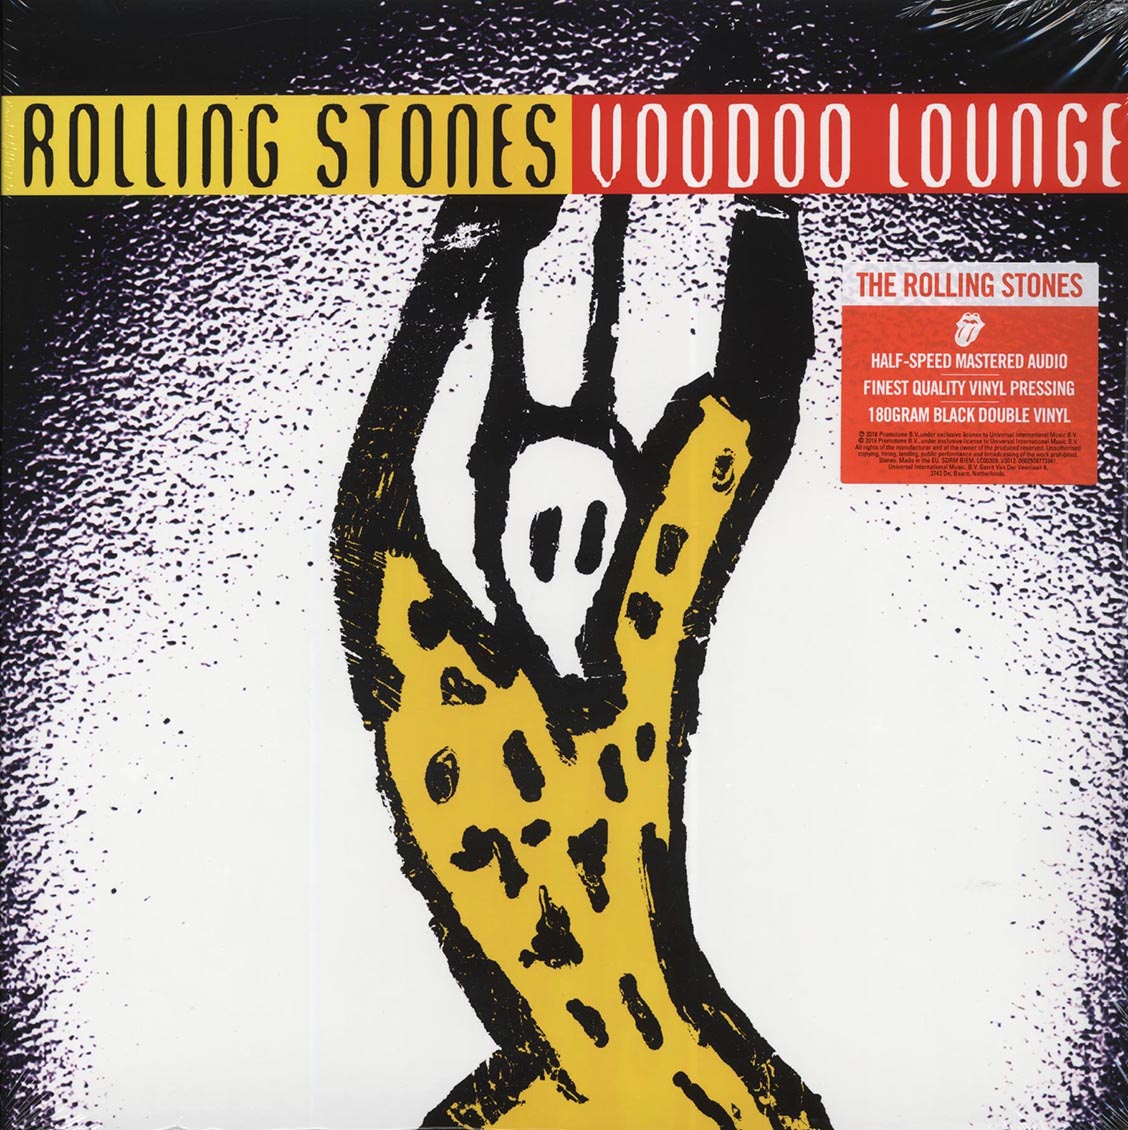 The Rolling Stones - Voodoo Lounge (2xLP) (180g) (remastered) - Vinyl LP